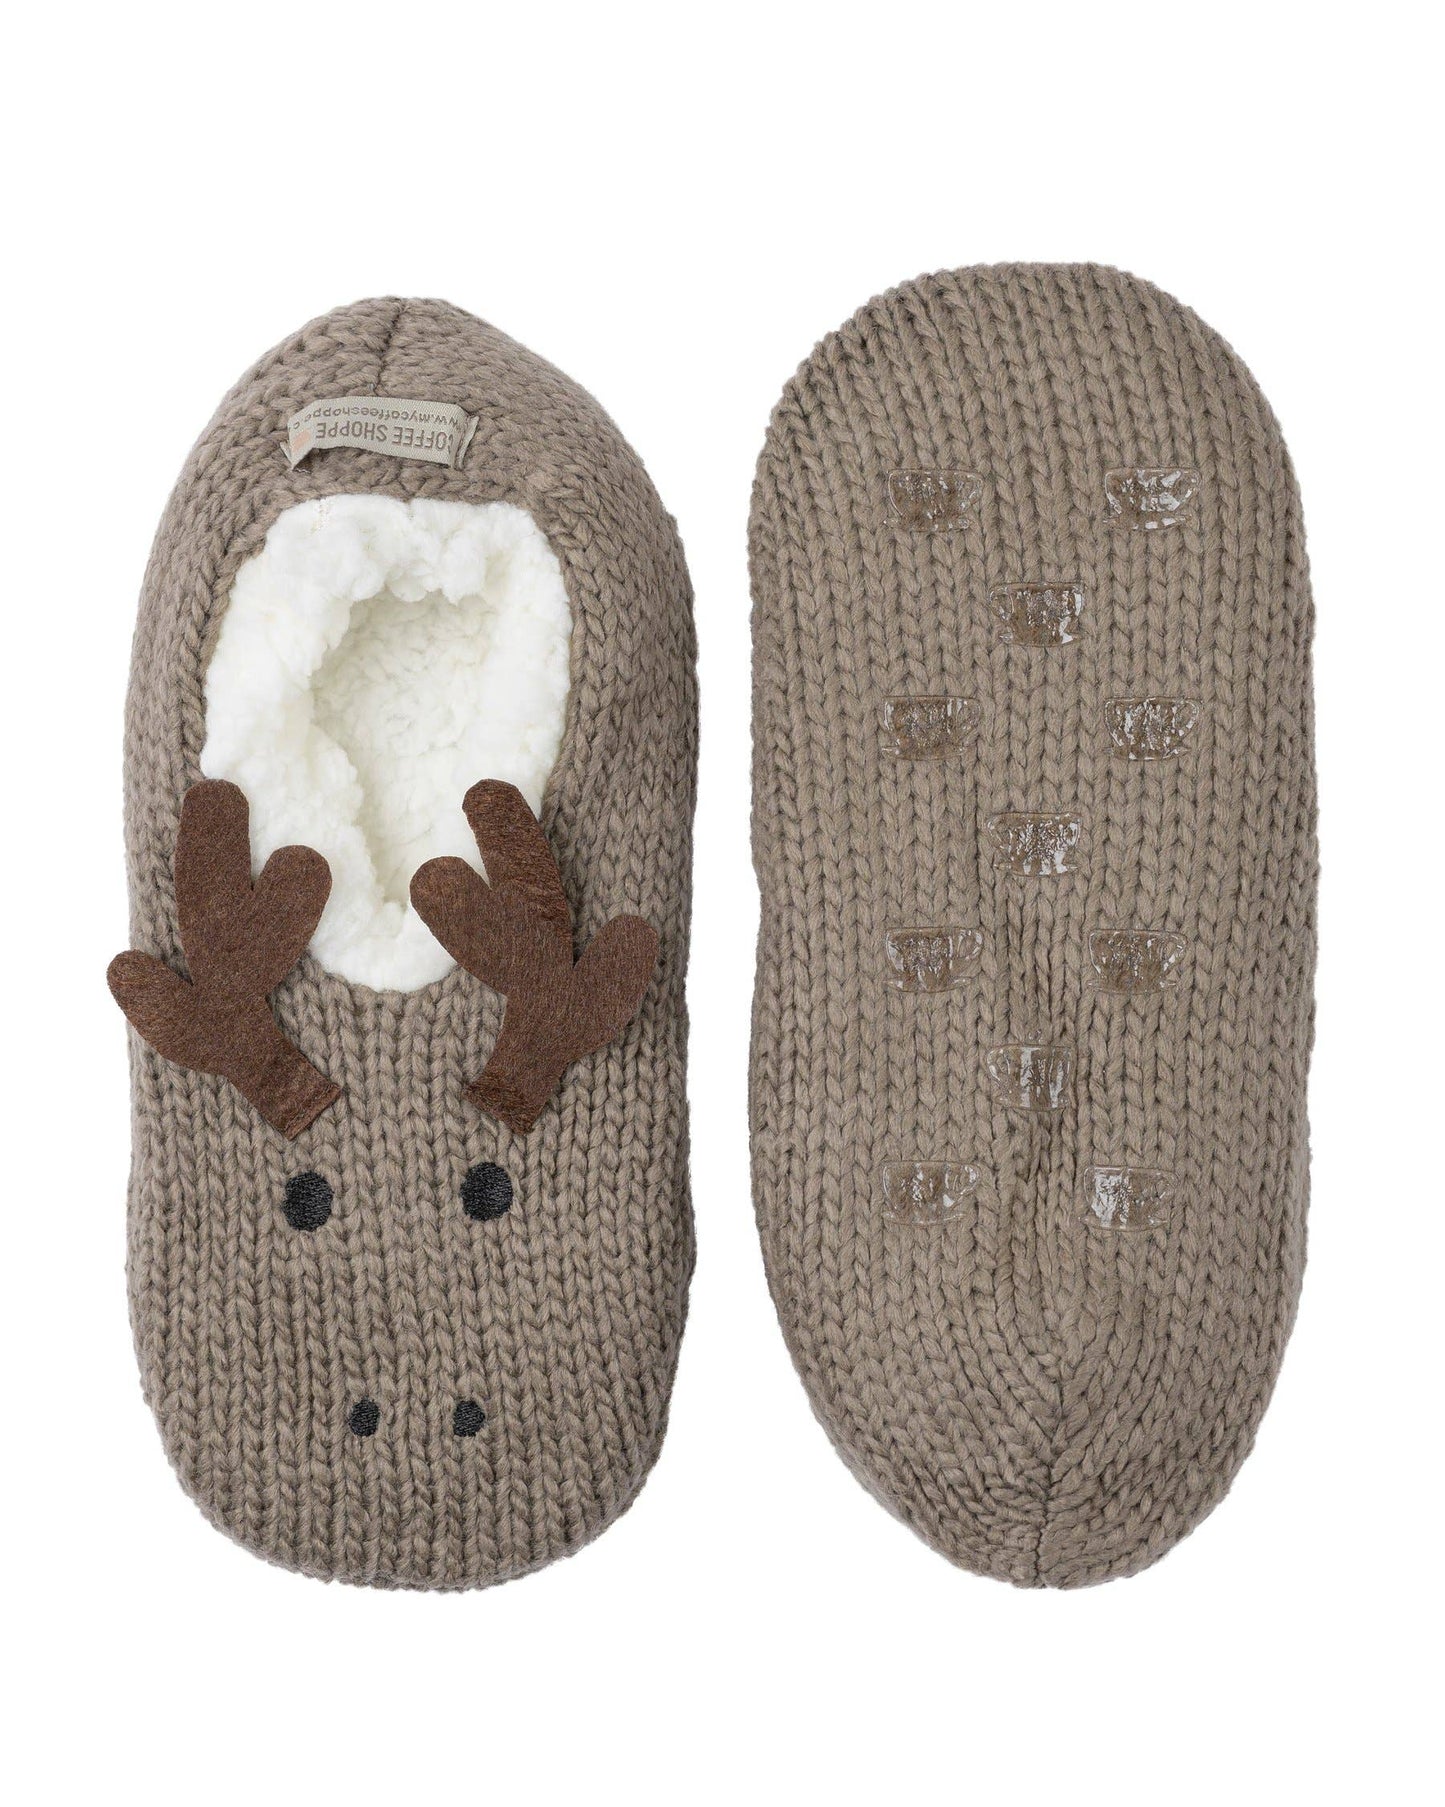 Plush Critter Ankle Slipper: Moose (Fungi) / S/M (5-7)